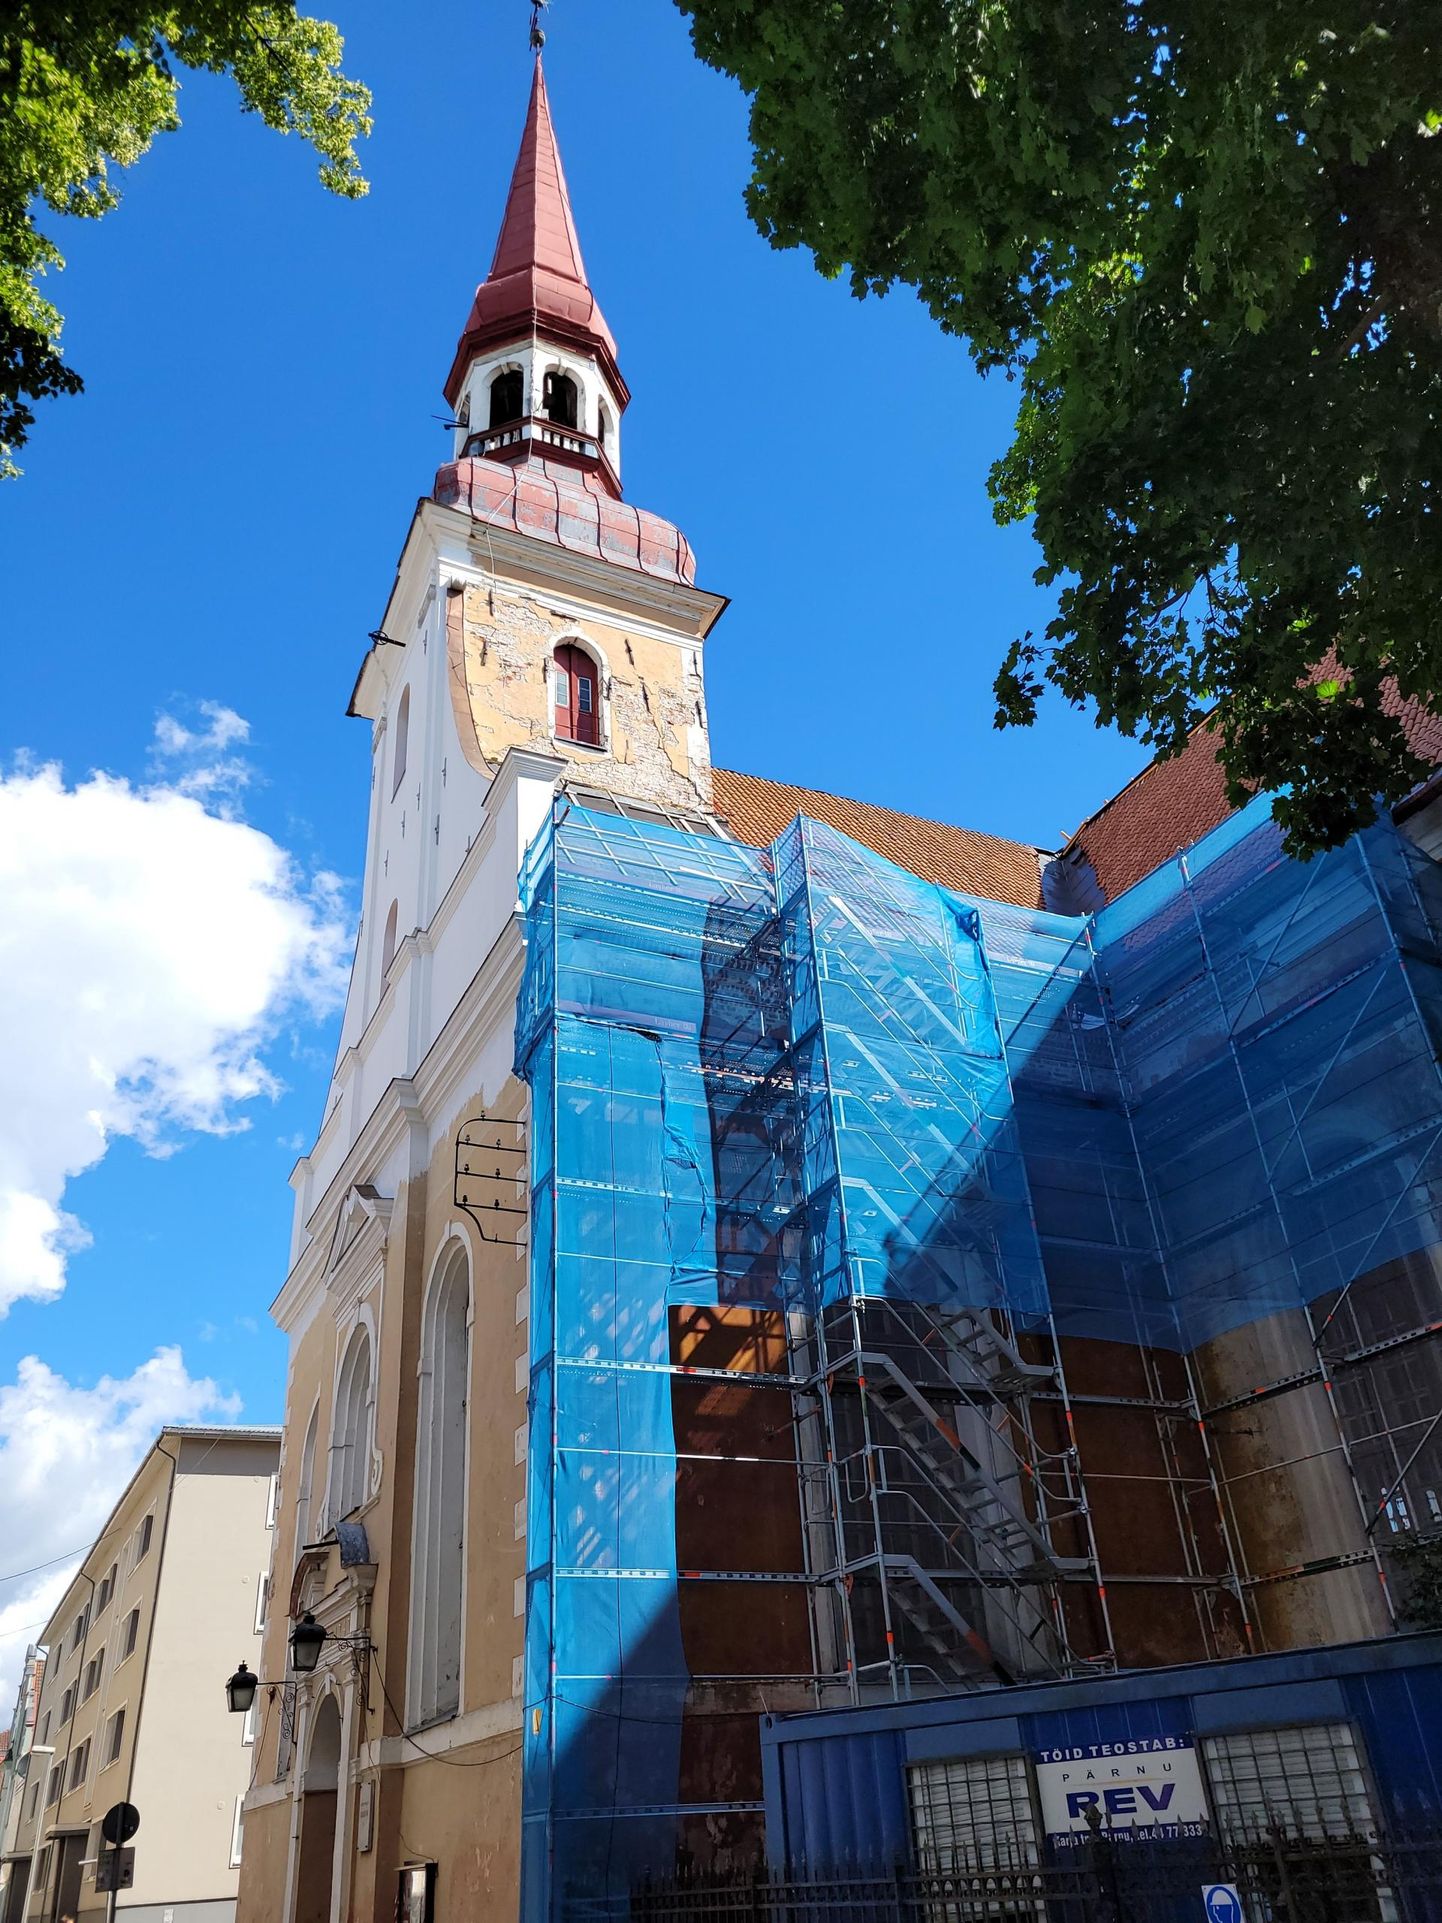 Eliisabeti kiriku restaureerimiseks läheb vaja 1,5-2 miljonit eurot.